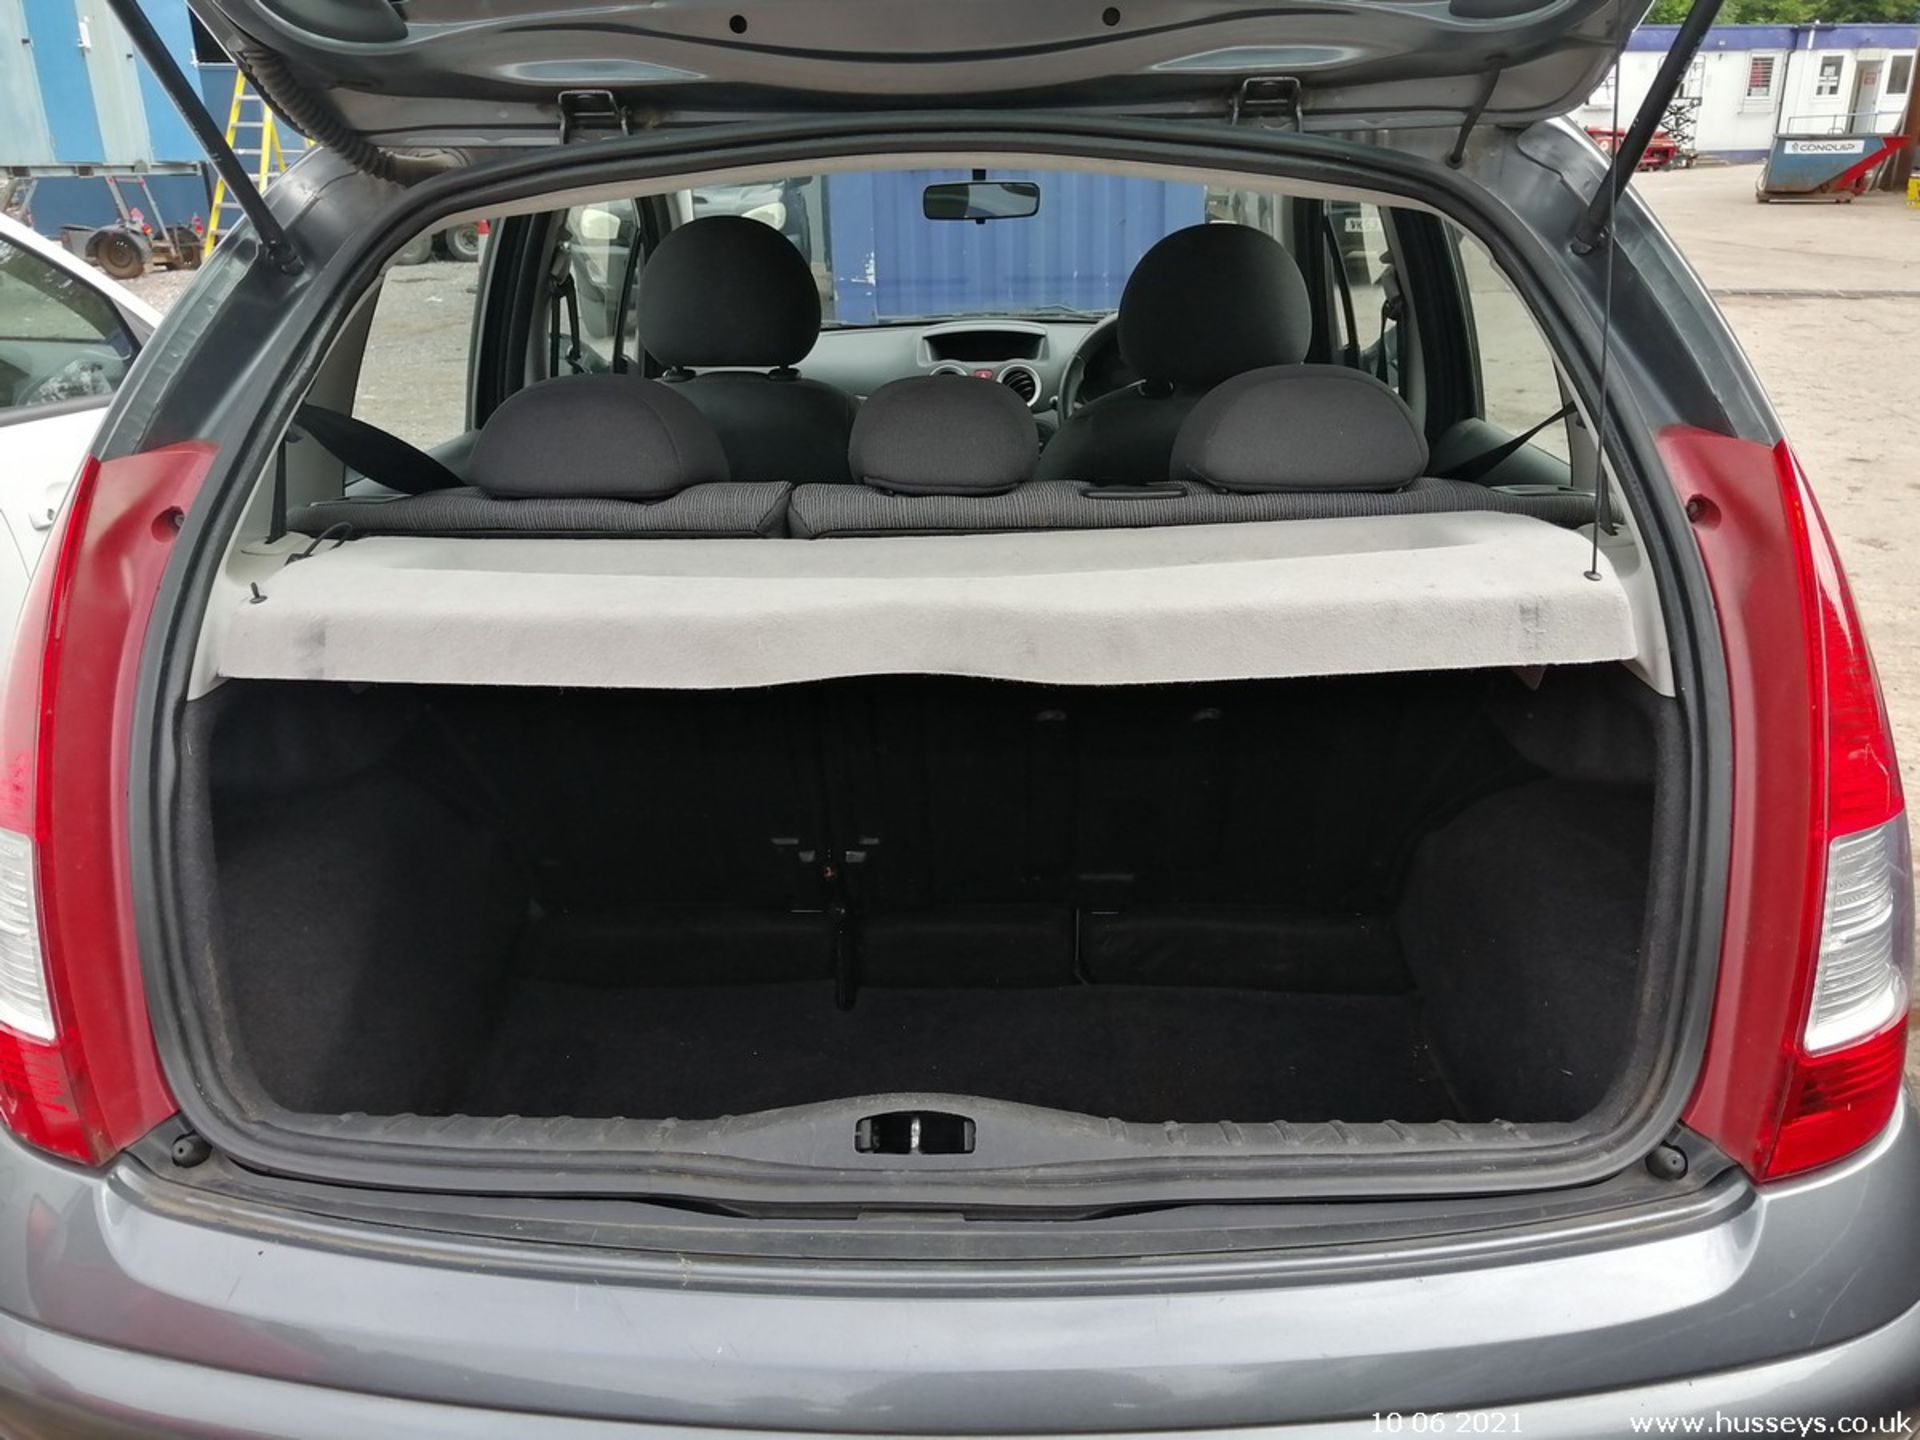 09/09 CITROEN C3 VTR - 1360cc 5dr Hatchback (Grey, 118k) - Image 8 of 11